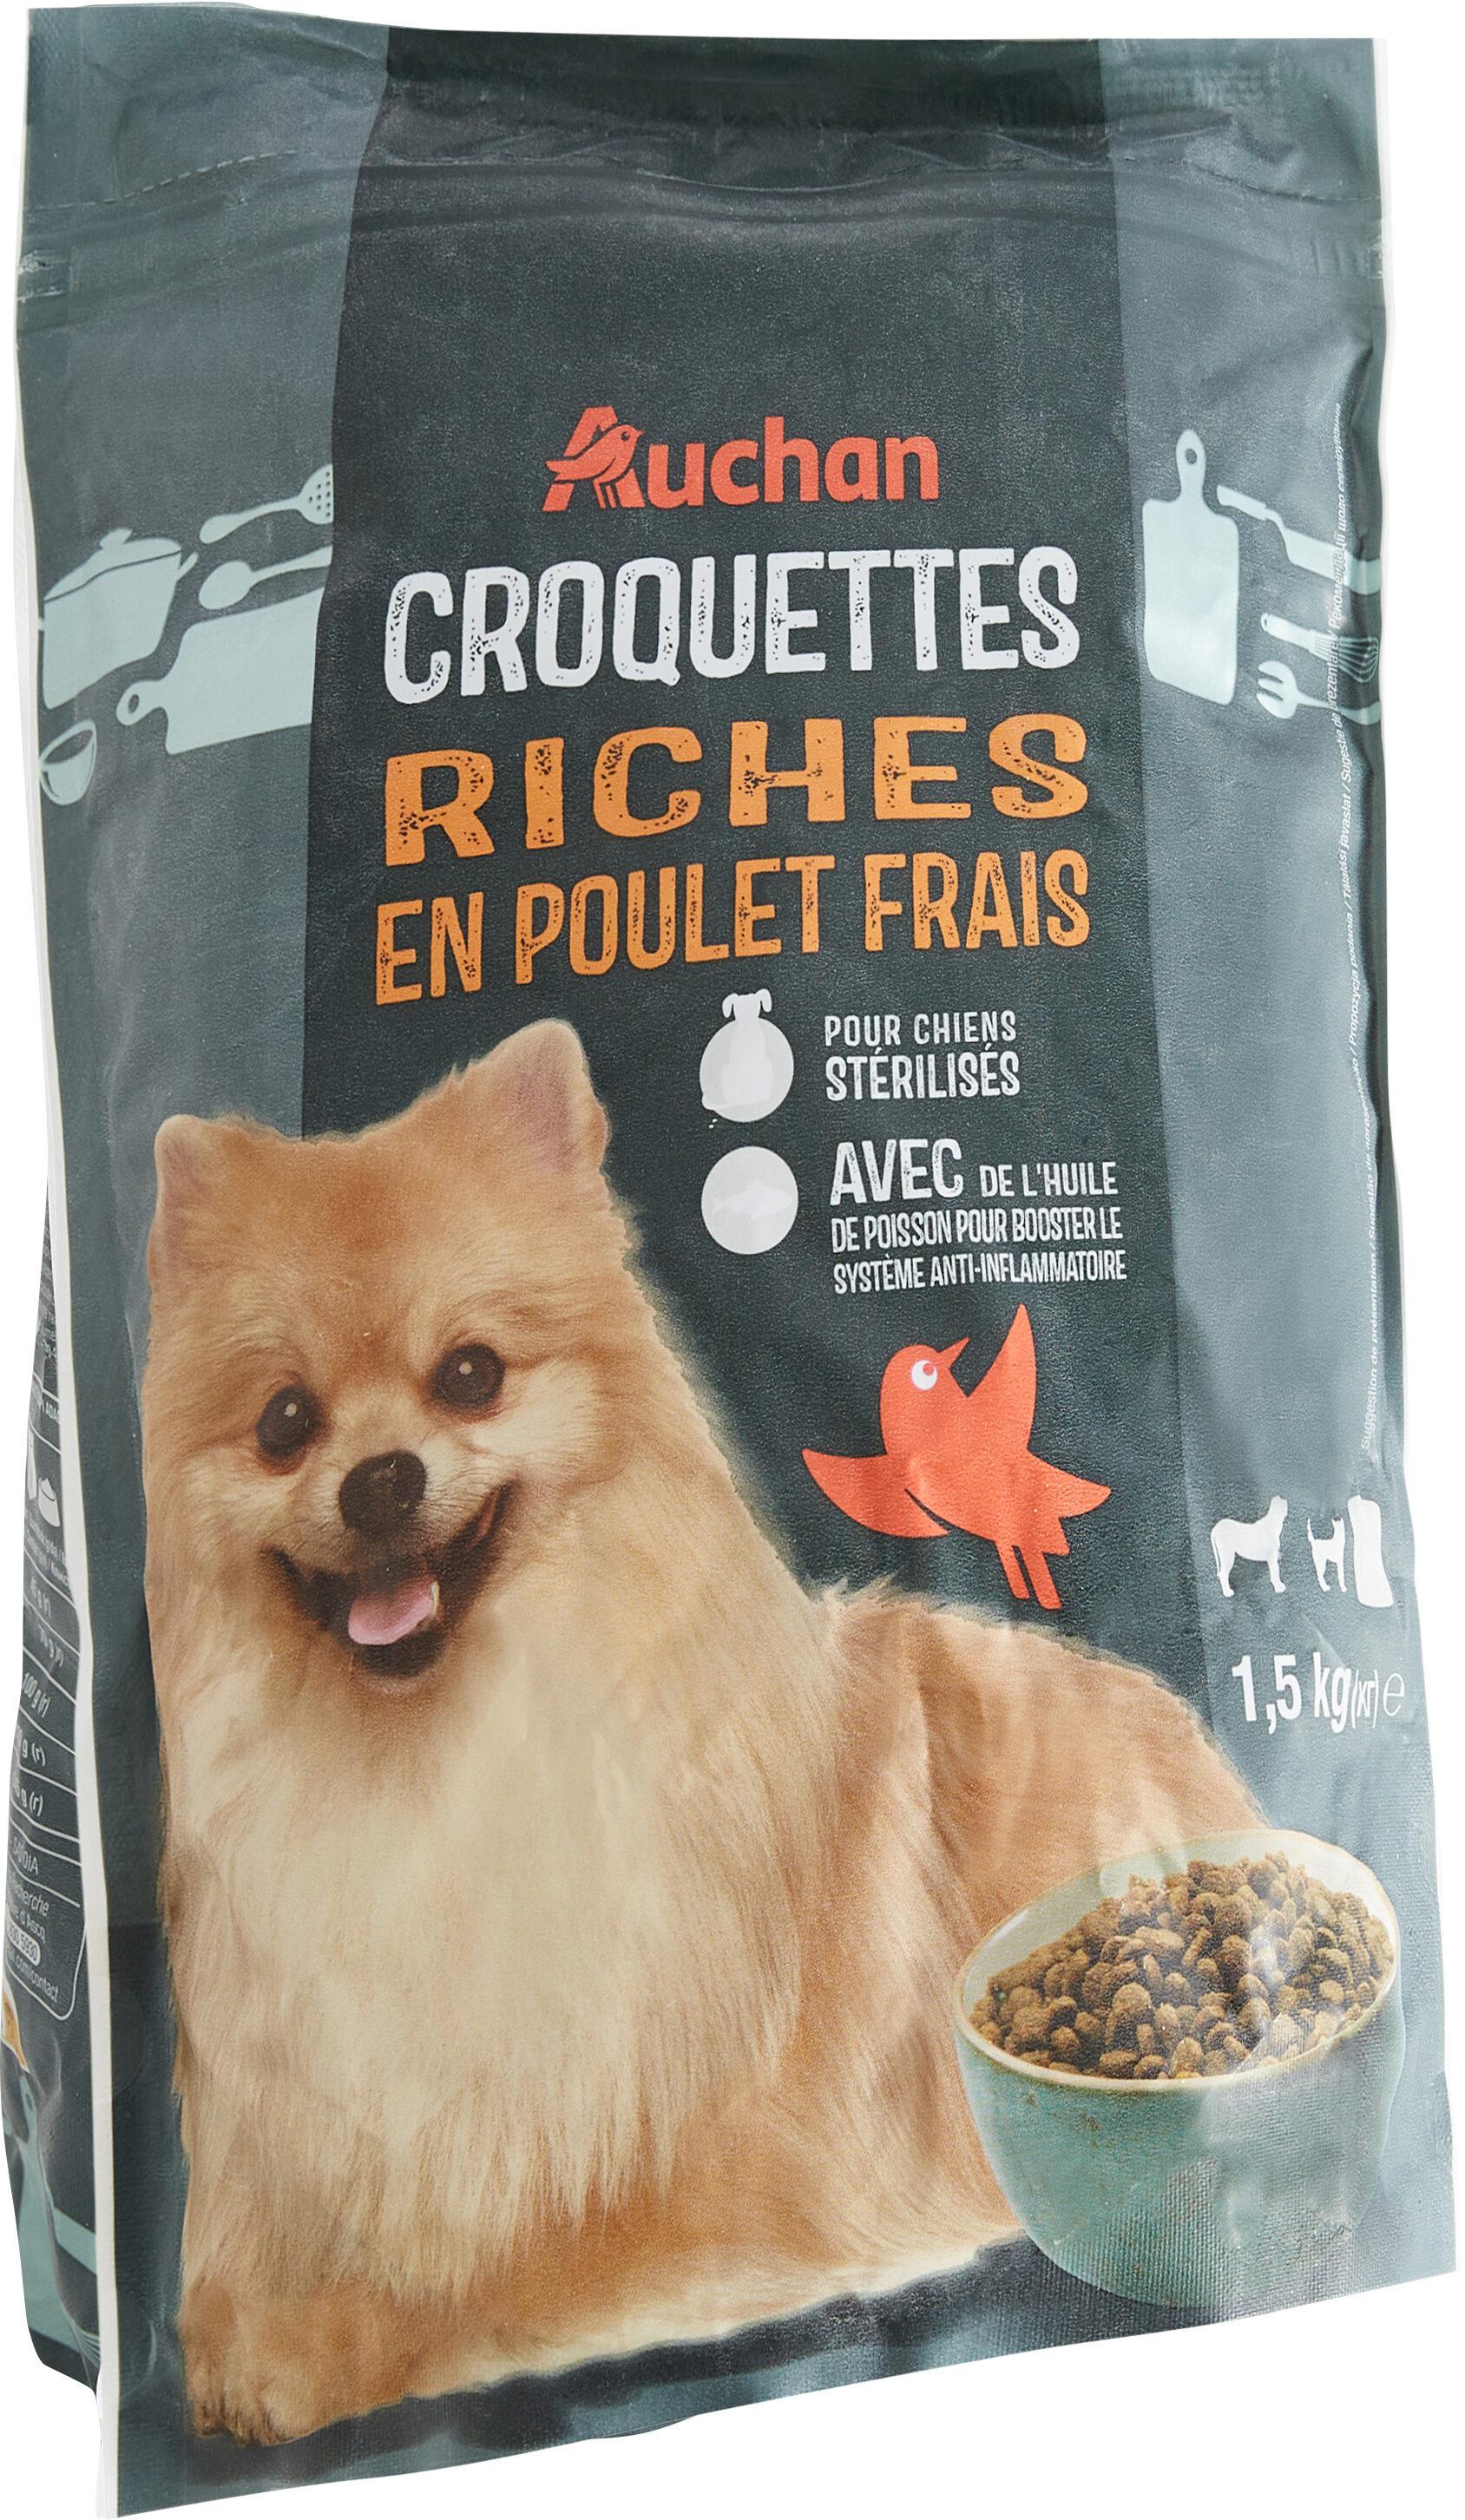 Croquette chien petit riche en poulet frais - Product - fr